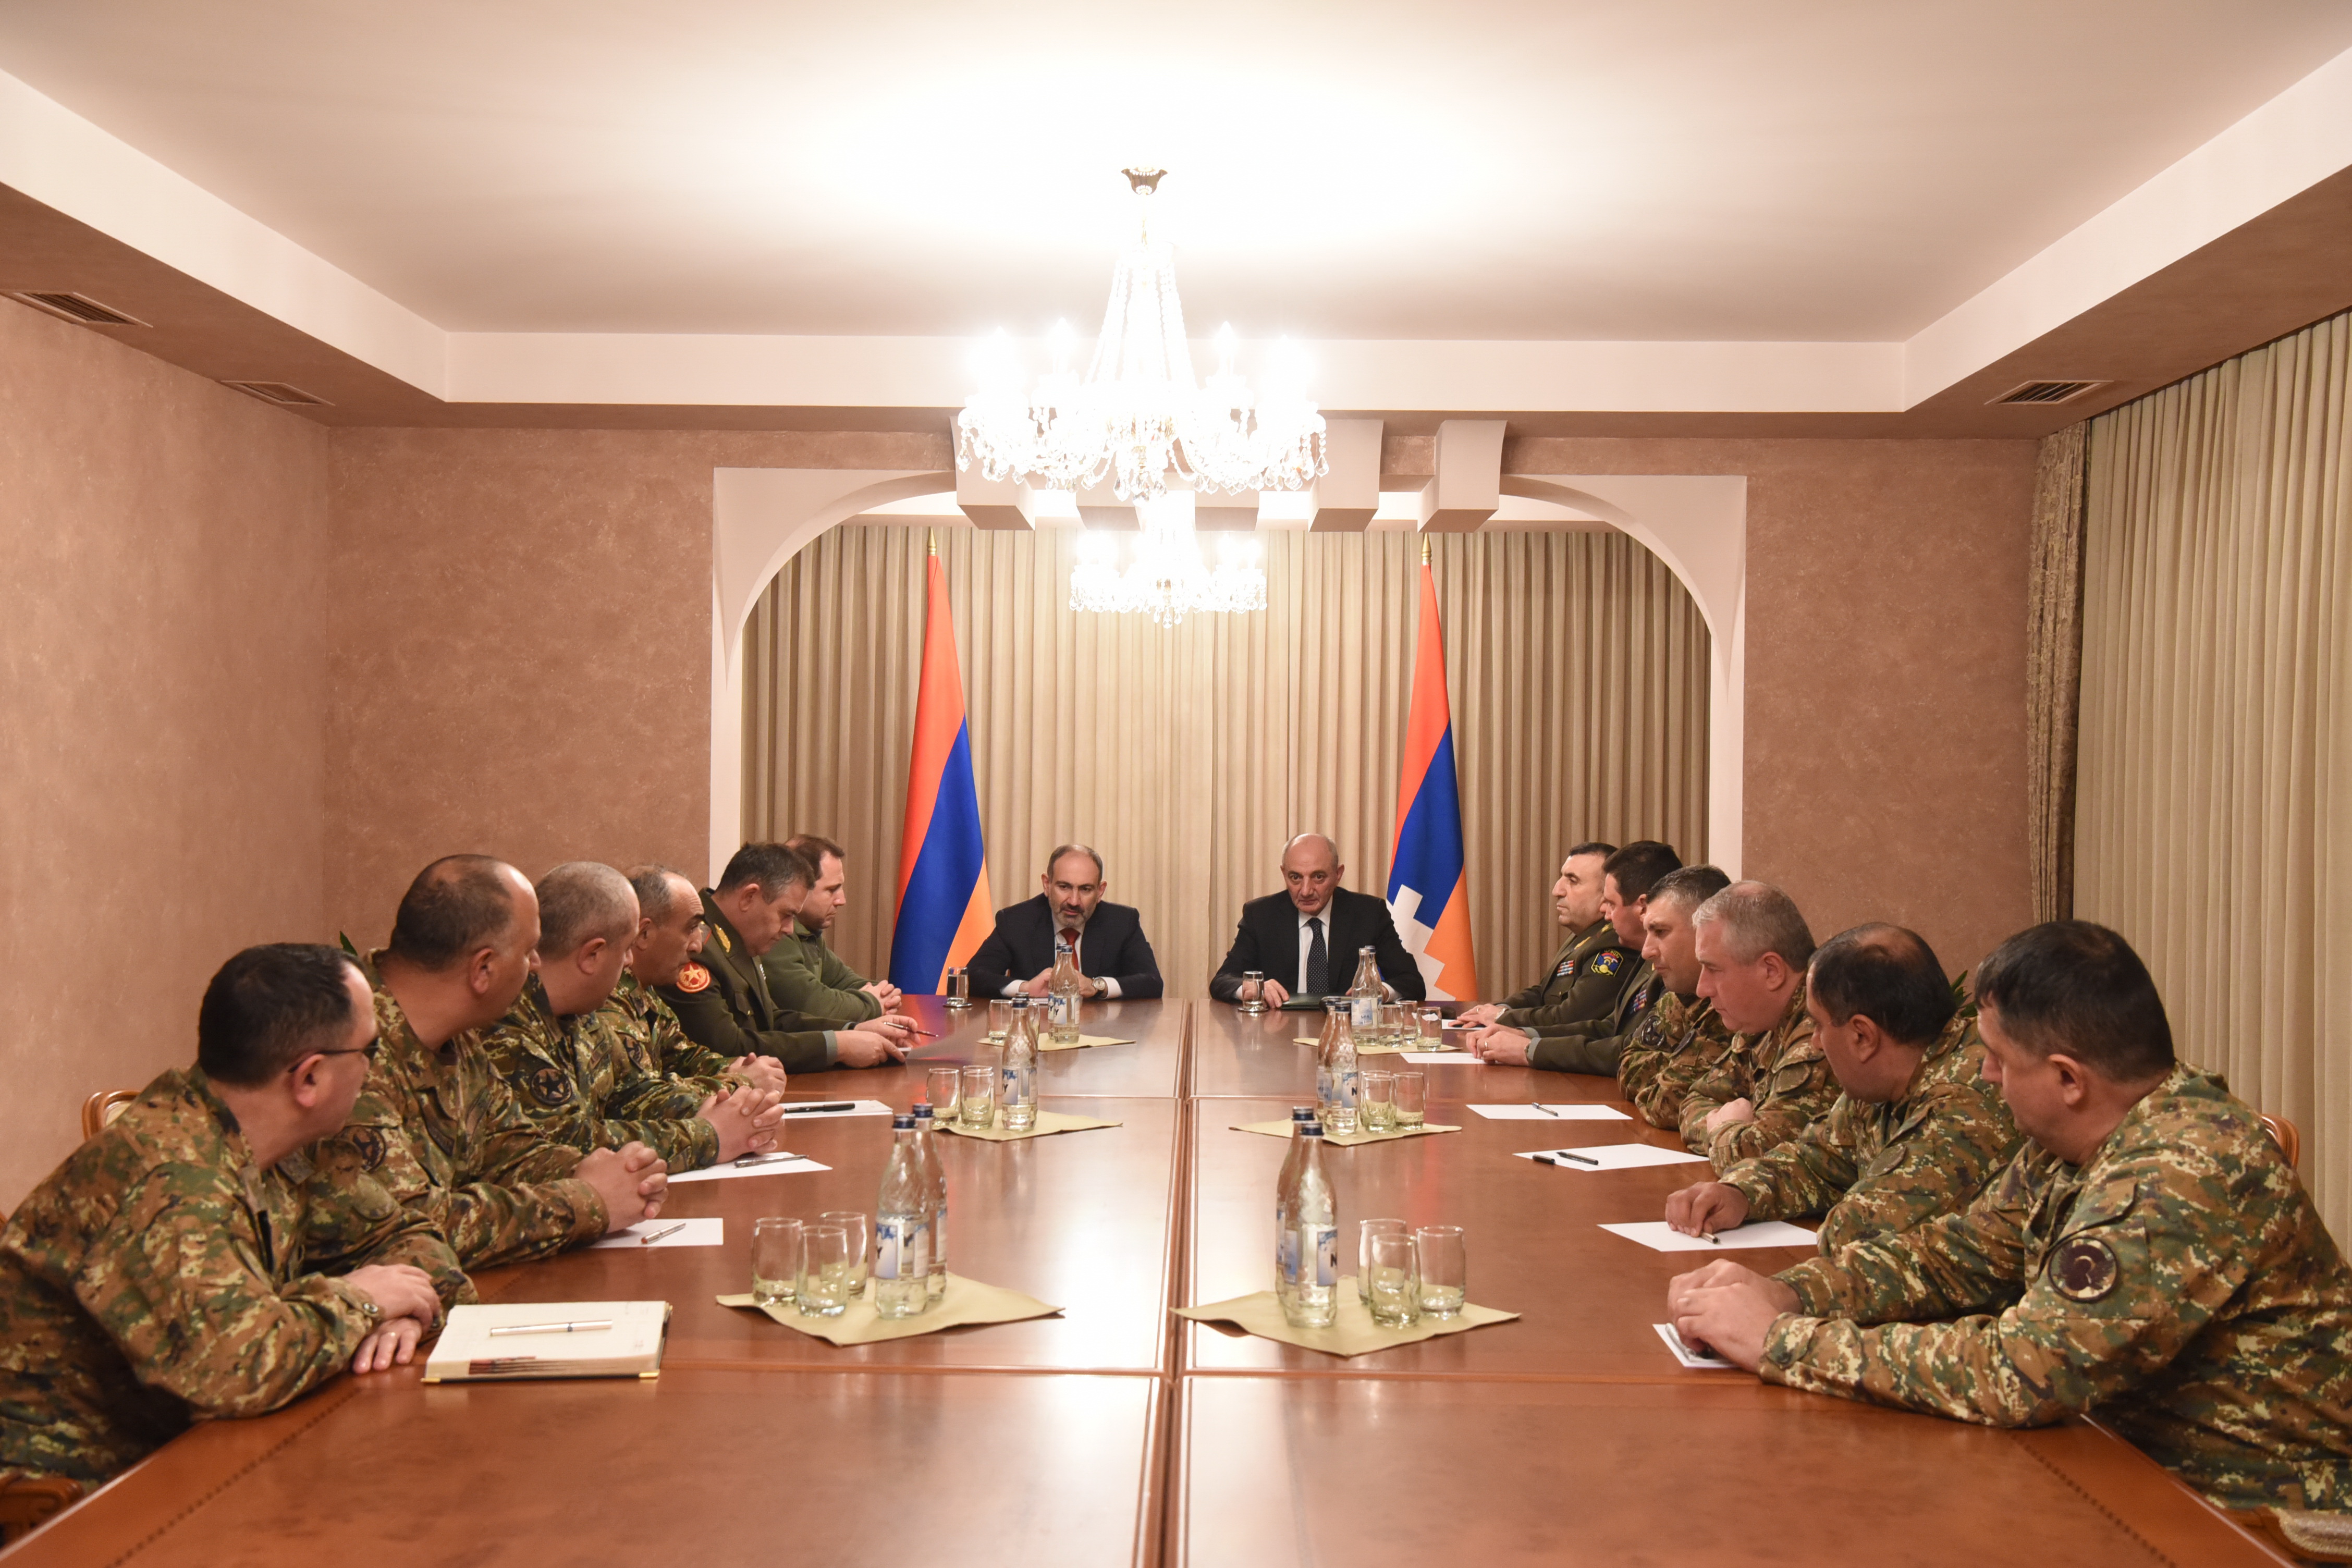 Никол Пашинян и Бако Саакян провели совещание с участием руководящего состава ВС